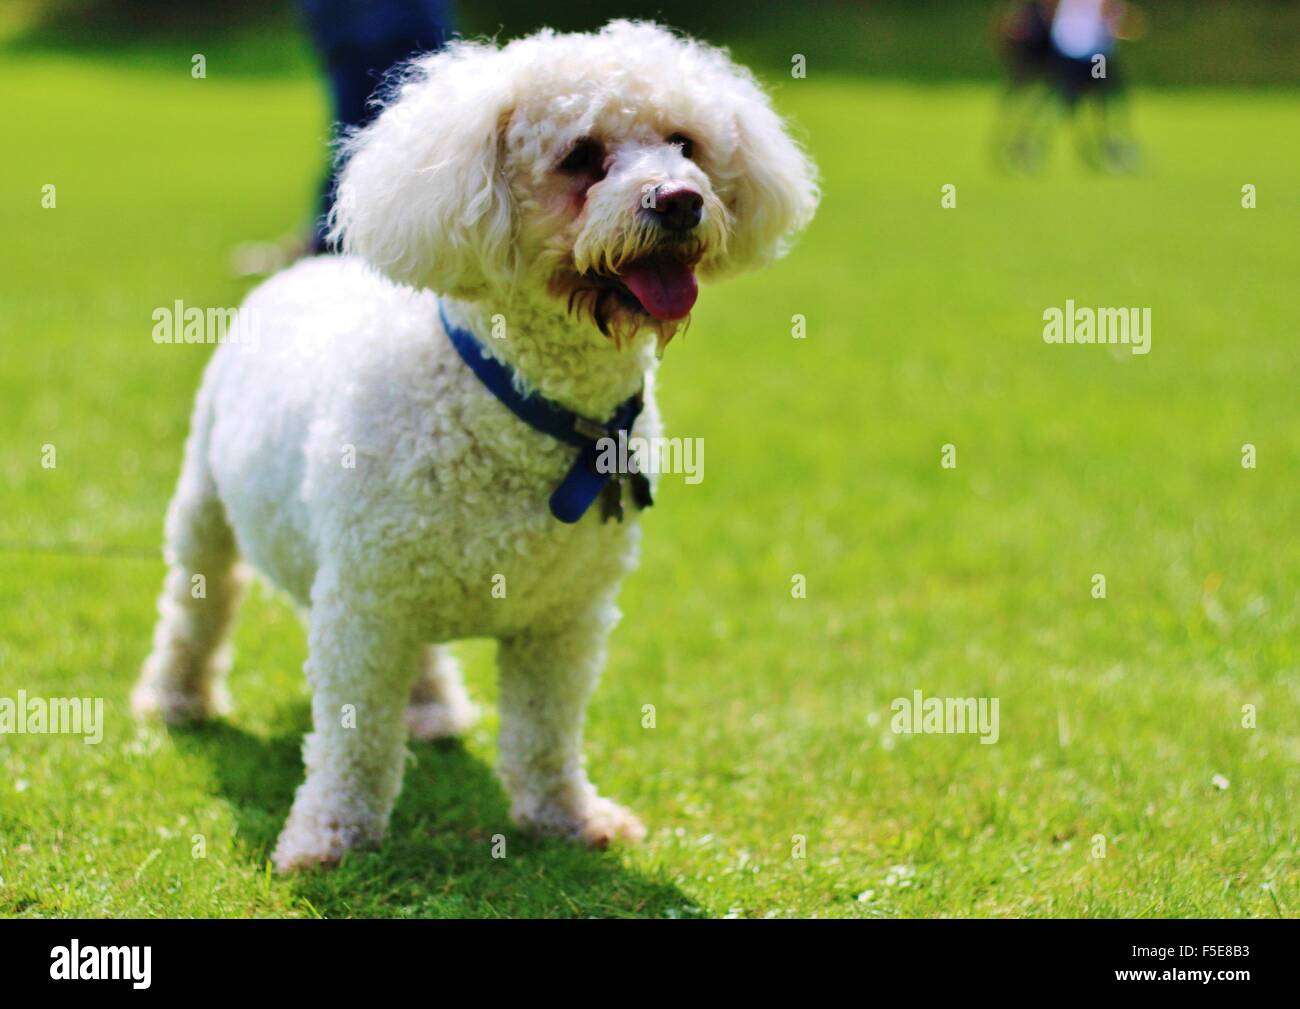 bichon frise, white dog, male dog, small breed, elderly dog, Stock Photo